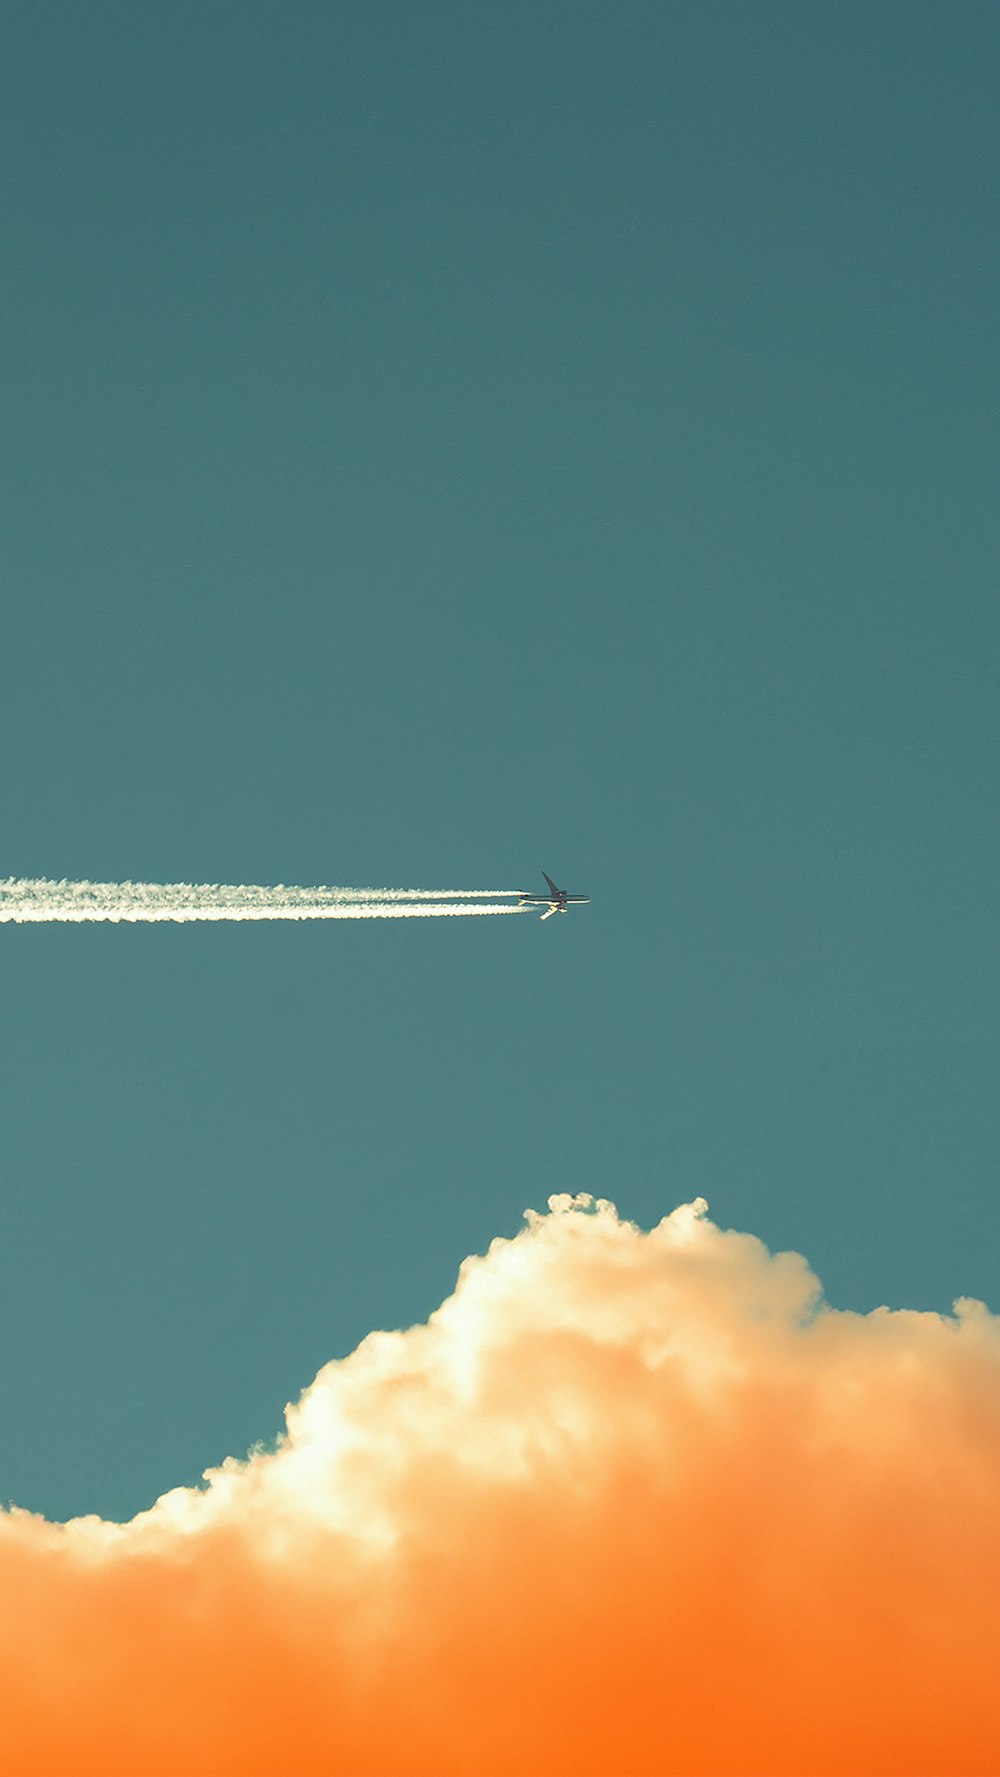 Ein Flugzeug fliegt am Himmel mit einer Rauchfahne dahinter